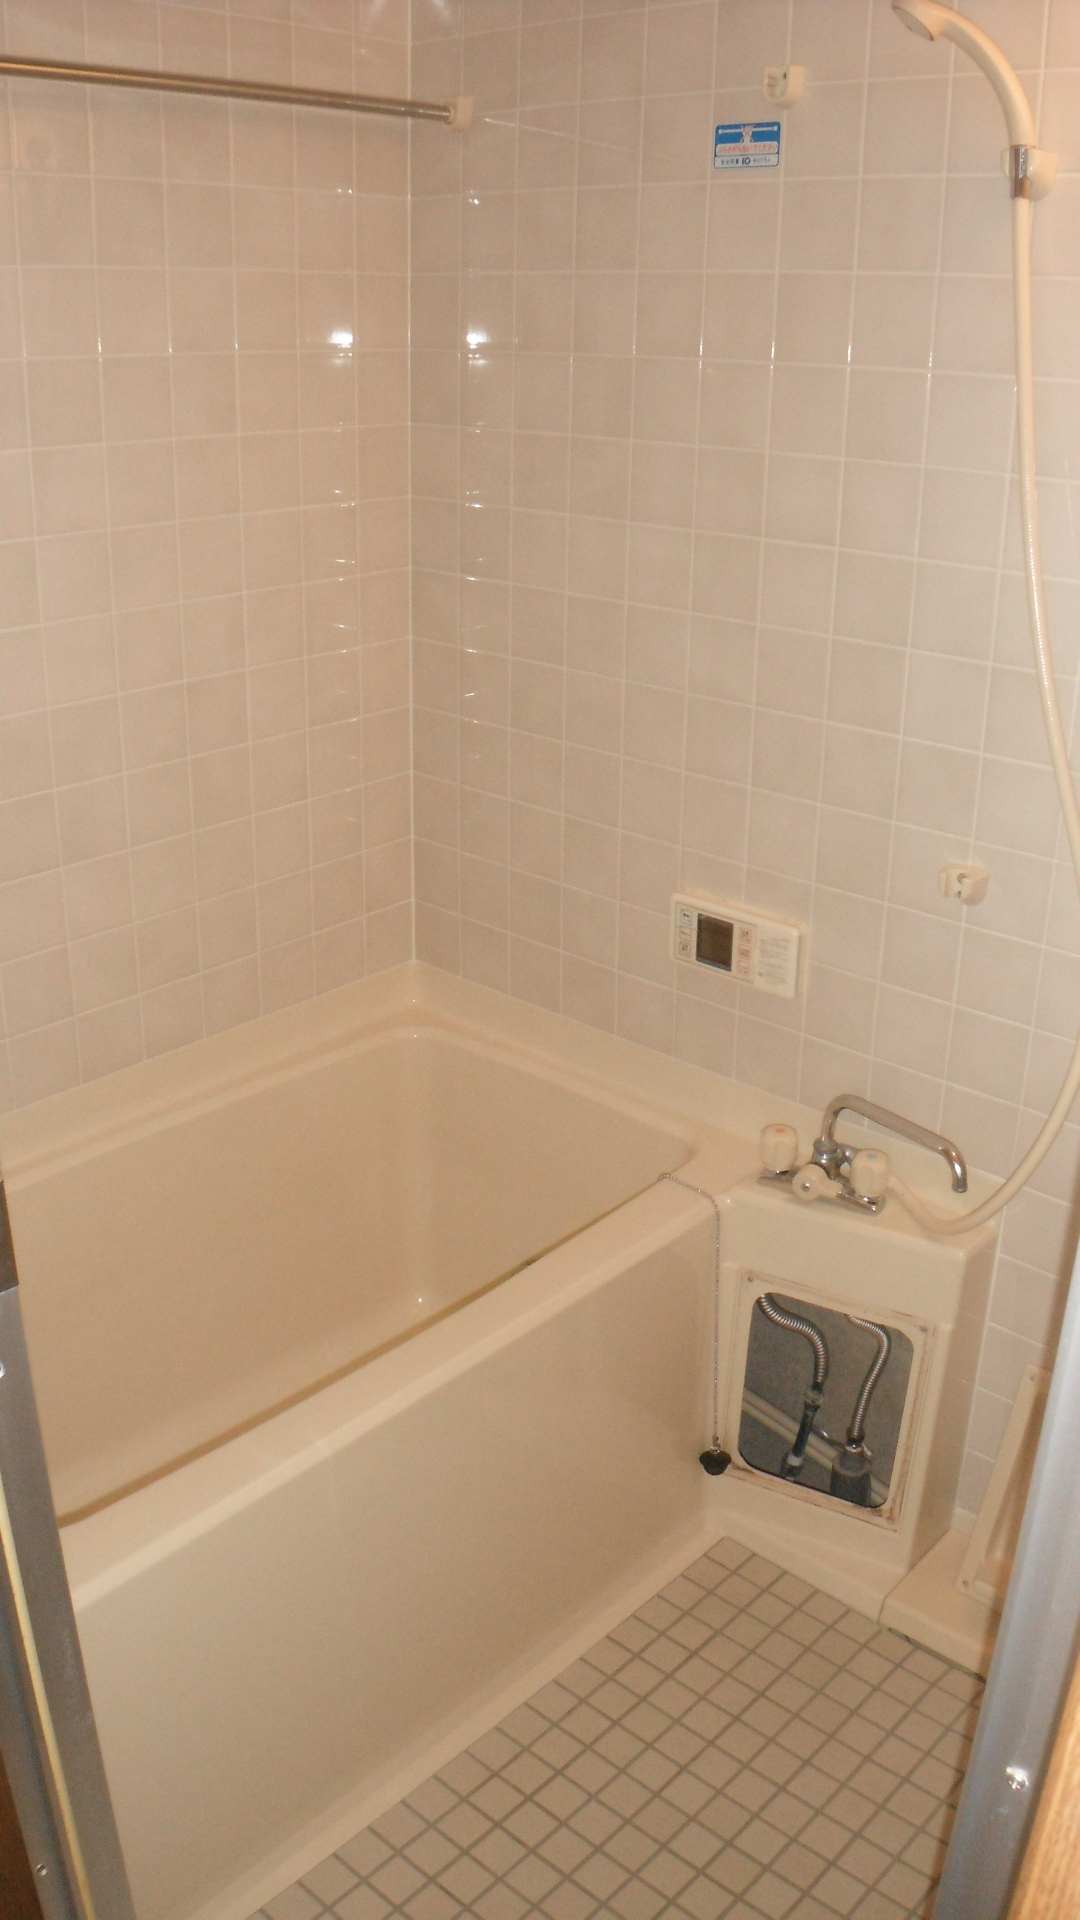 Bath. With bathroom ventilation drying heater